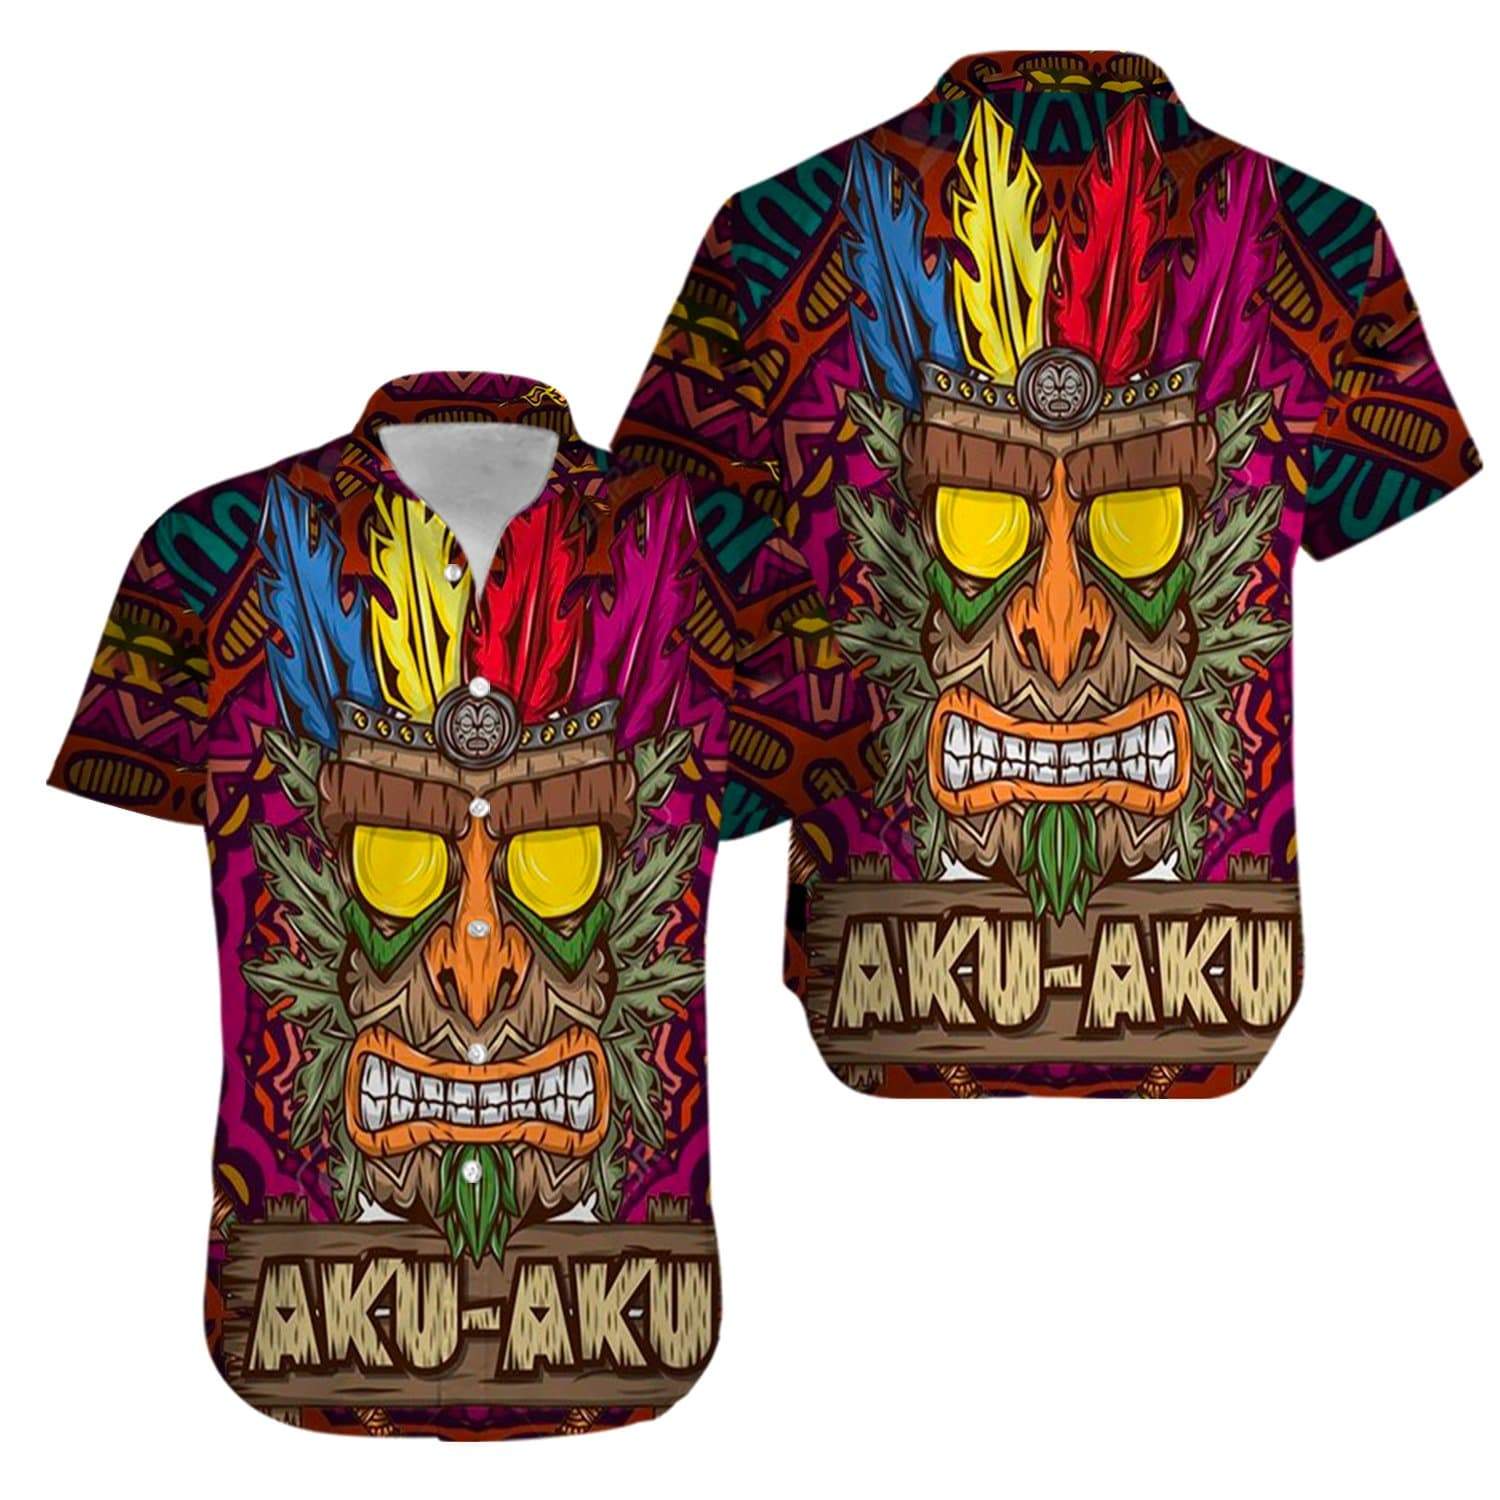 kurobase-aku-aku-tiki-hello-summer-aloha-hawaiian-shirts-v.jpg